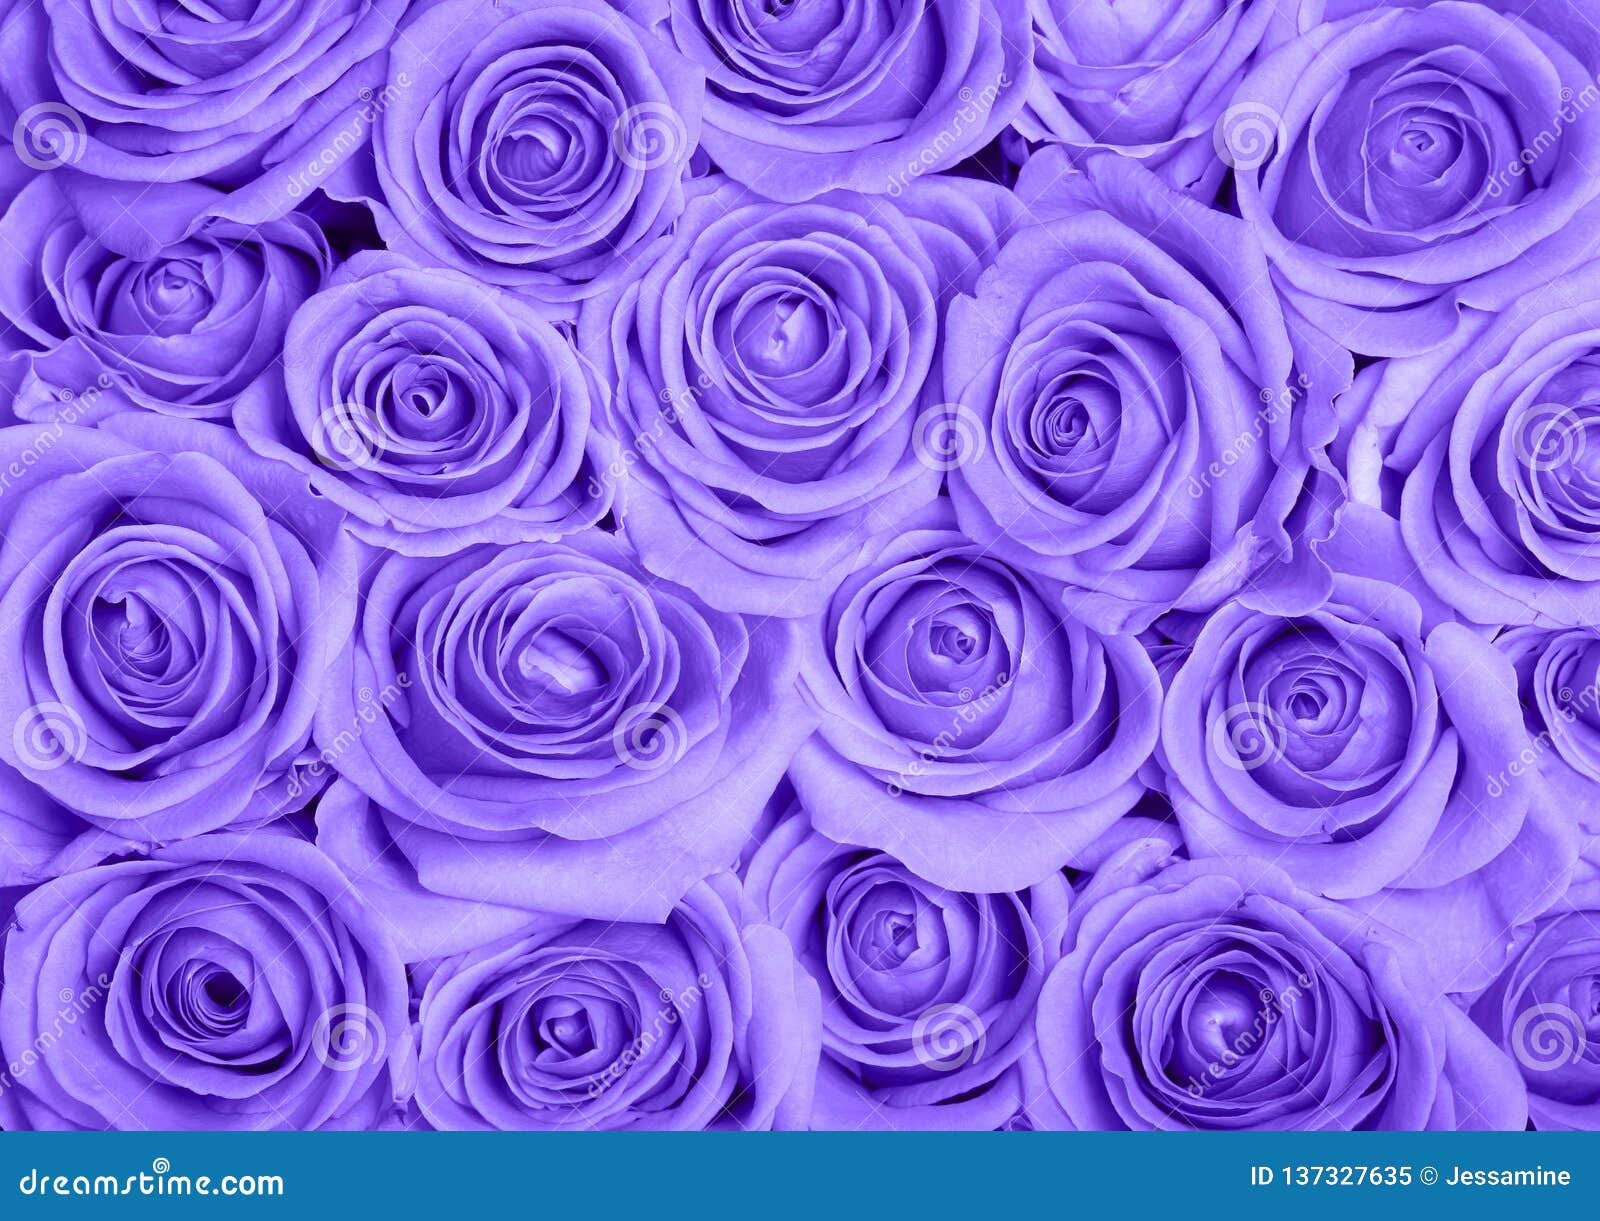 Hình ảnh hoa hồng tím: Bạn muốn tìm kiếm những hình ảnh tuyệt đẹp về hoa hồng tím? Đây là nơi cho bạn. Bạn sẽ khám phá được những cánh hoa mộc mạc và trang nhã, đầy sức sống và tình yêu. Hãy cùng chúng tôi khám phá hình ảnh hoa hồng tím đầy ấn tượng.